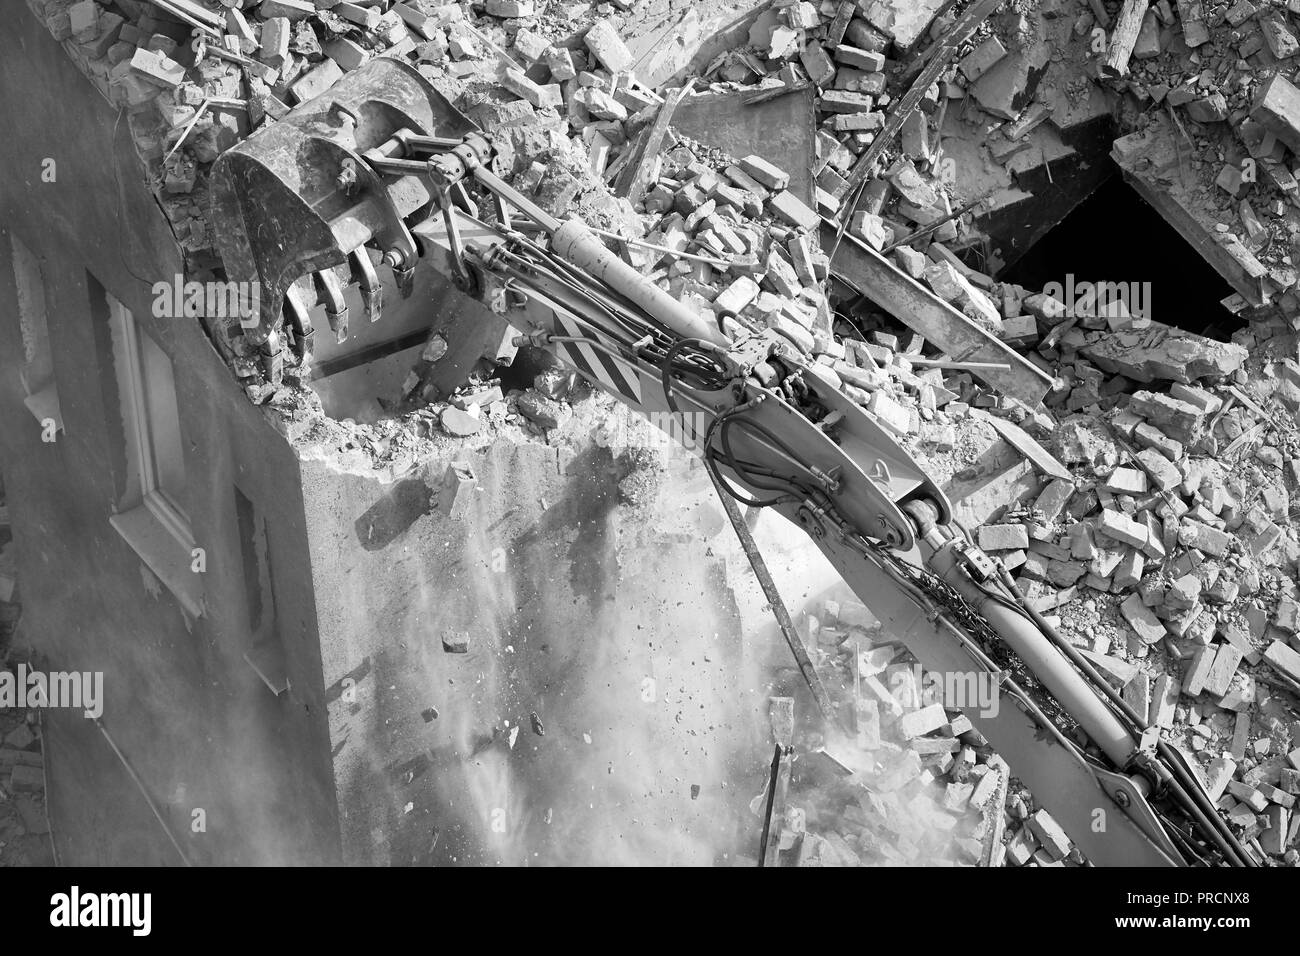 Mur de brique d'écrasement, démolition de bâtiments au moyen d'une excavatrice, vue de dessus. Banque D'Images